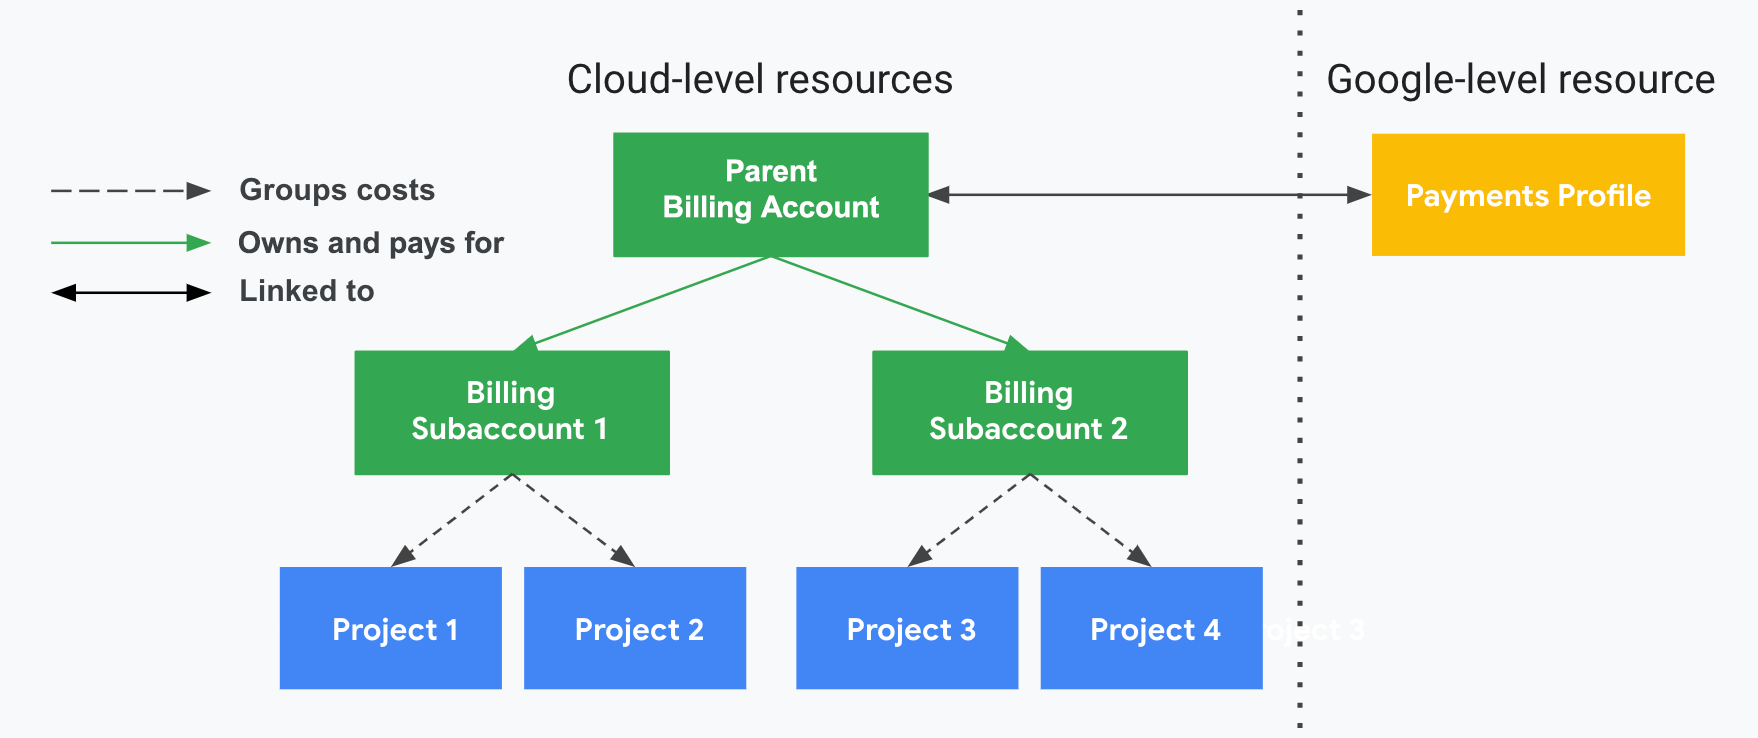 תיאור האופן שבו פרויקטים מקושרים לחשבונות לחיוב ב-Cloud, לחשבונות משניים לחיוב ב-Cloud ולפרופיל התשלומים. בצד אחד מוצגים המשאבים ברמת הענן (חשבון לחיוב ב-Cloud, חשבונות משניים והפרויקטים שמשויכים אליהם), ובצד השני, מעבר לקו המקווקו שלאורך, מוצג המשאב ברמת Google (פרופיל תשלומים). עלויות השימוש בפרויקט מקובצות ביחד לפי הסכום של החשבונות המשניים לחיוב ב-Cloud. חשבון ההורה לחיוב ב-Cloud של המפיץ, שמקושר לפרופיל התשלומים, הוא זה שמשלם על העלויות בחשבונות המשניים.